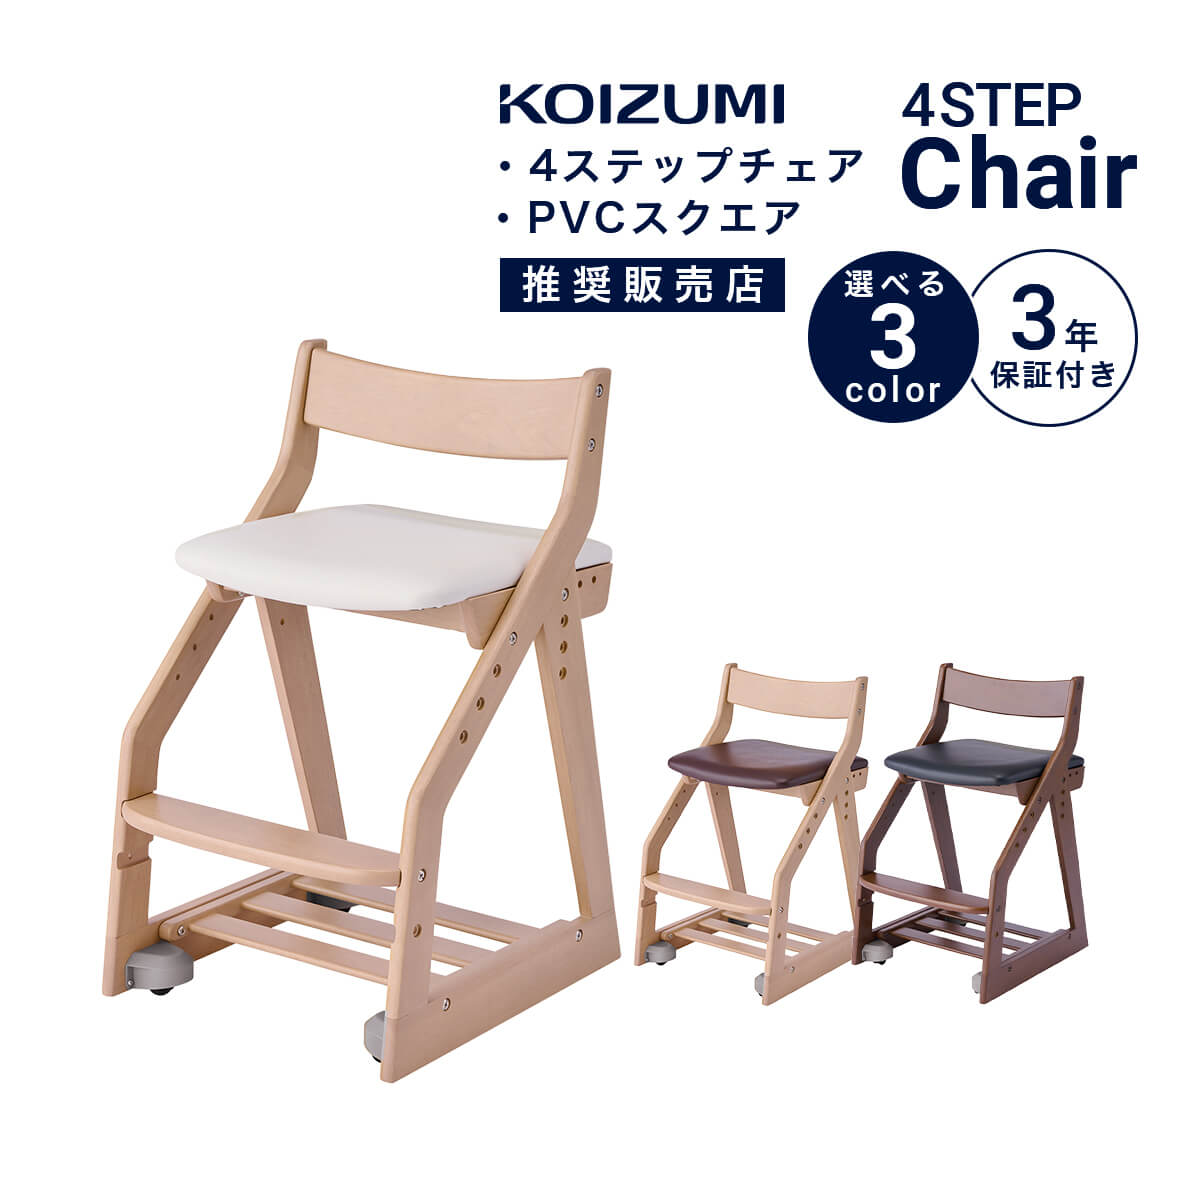  学習椅子 KOIZUMI 姿勢 学習イス コイズミ 木製椅子 キッズ PVCレザー 板座 4ステップチェア ラバーウッド 高さ調節 スノコトレー キャスター付き 足元収納付き KDC-461MOWH KDC-462MODB KDC-463WTBK 幅41 「商：小」「才：3」